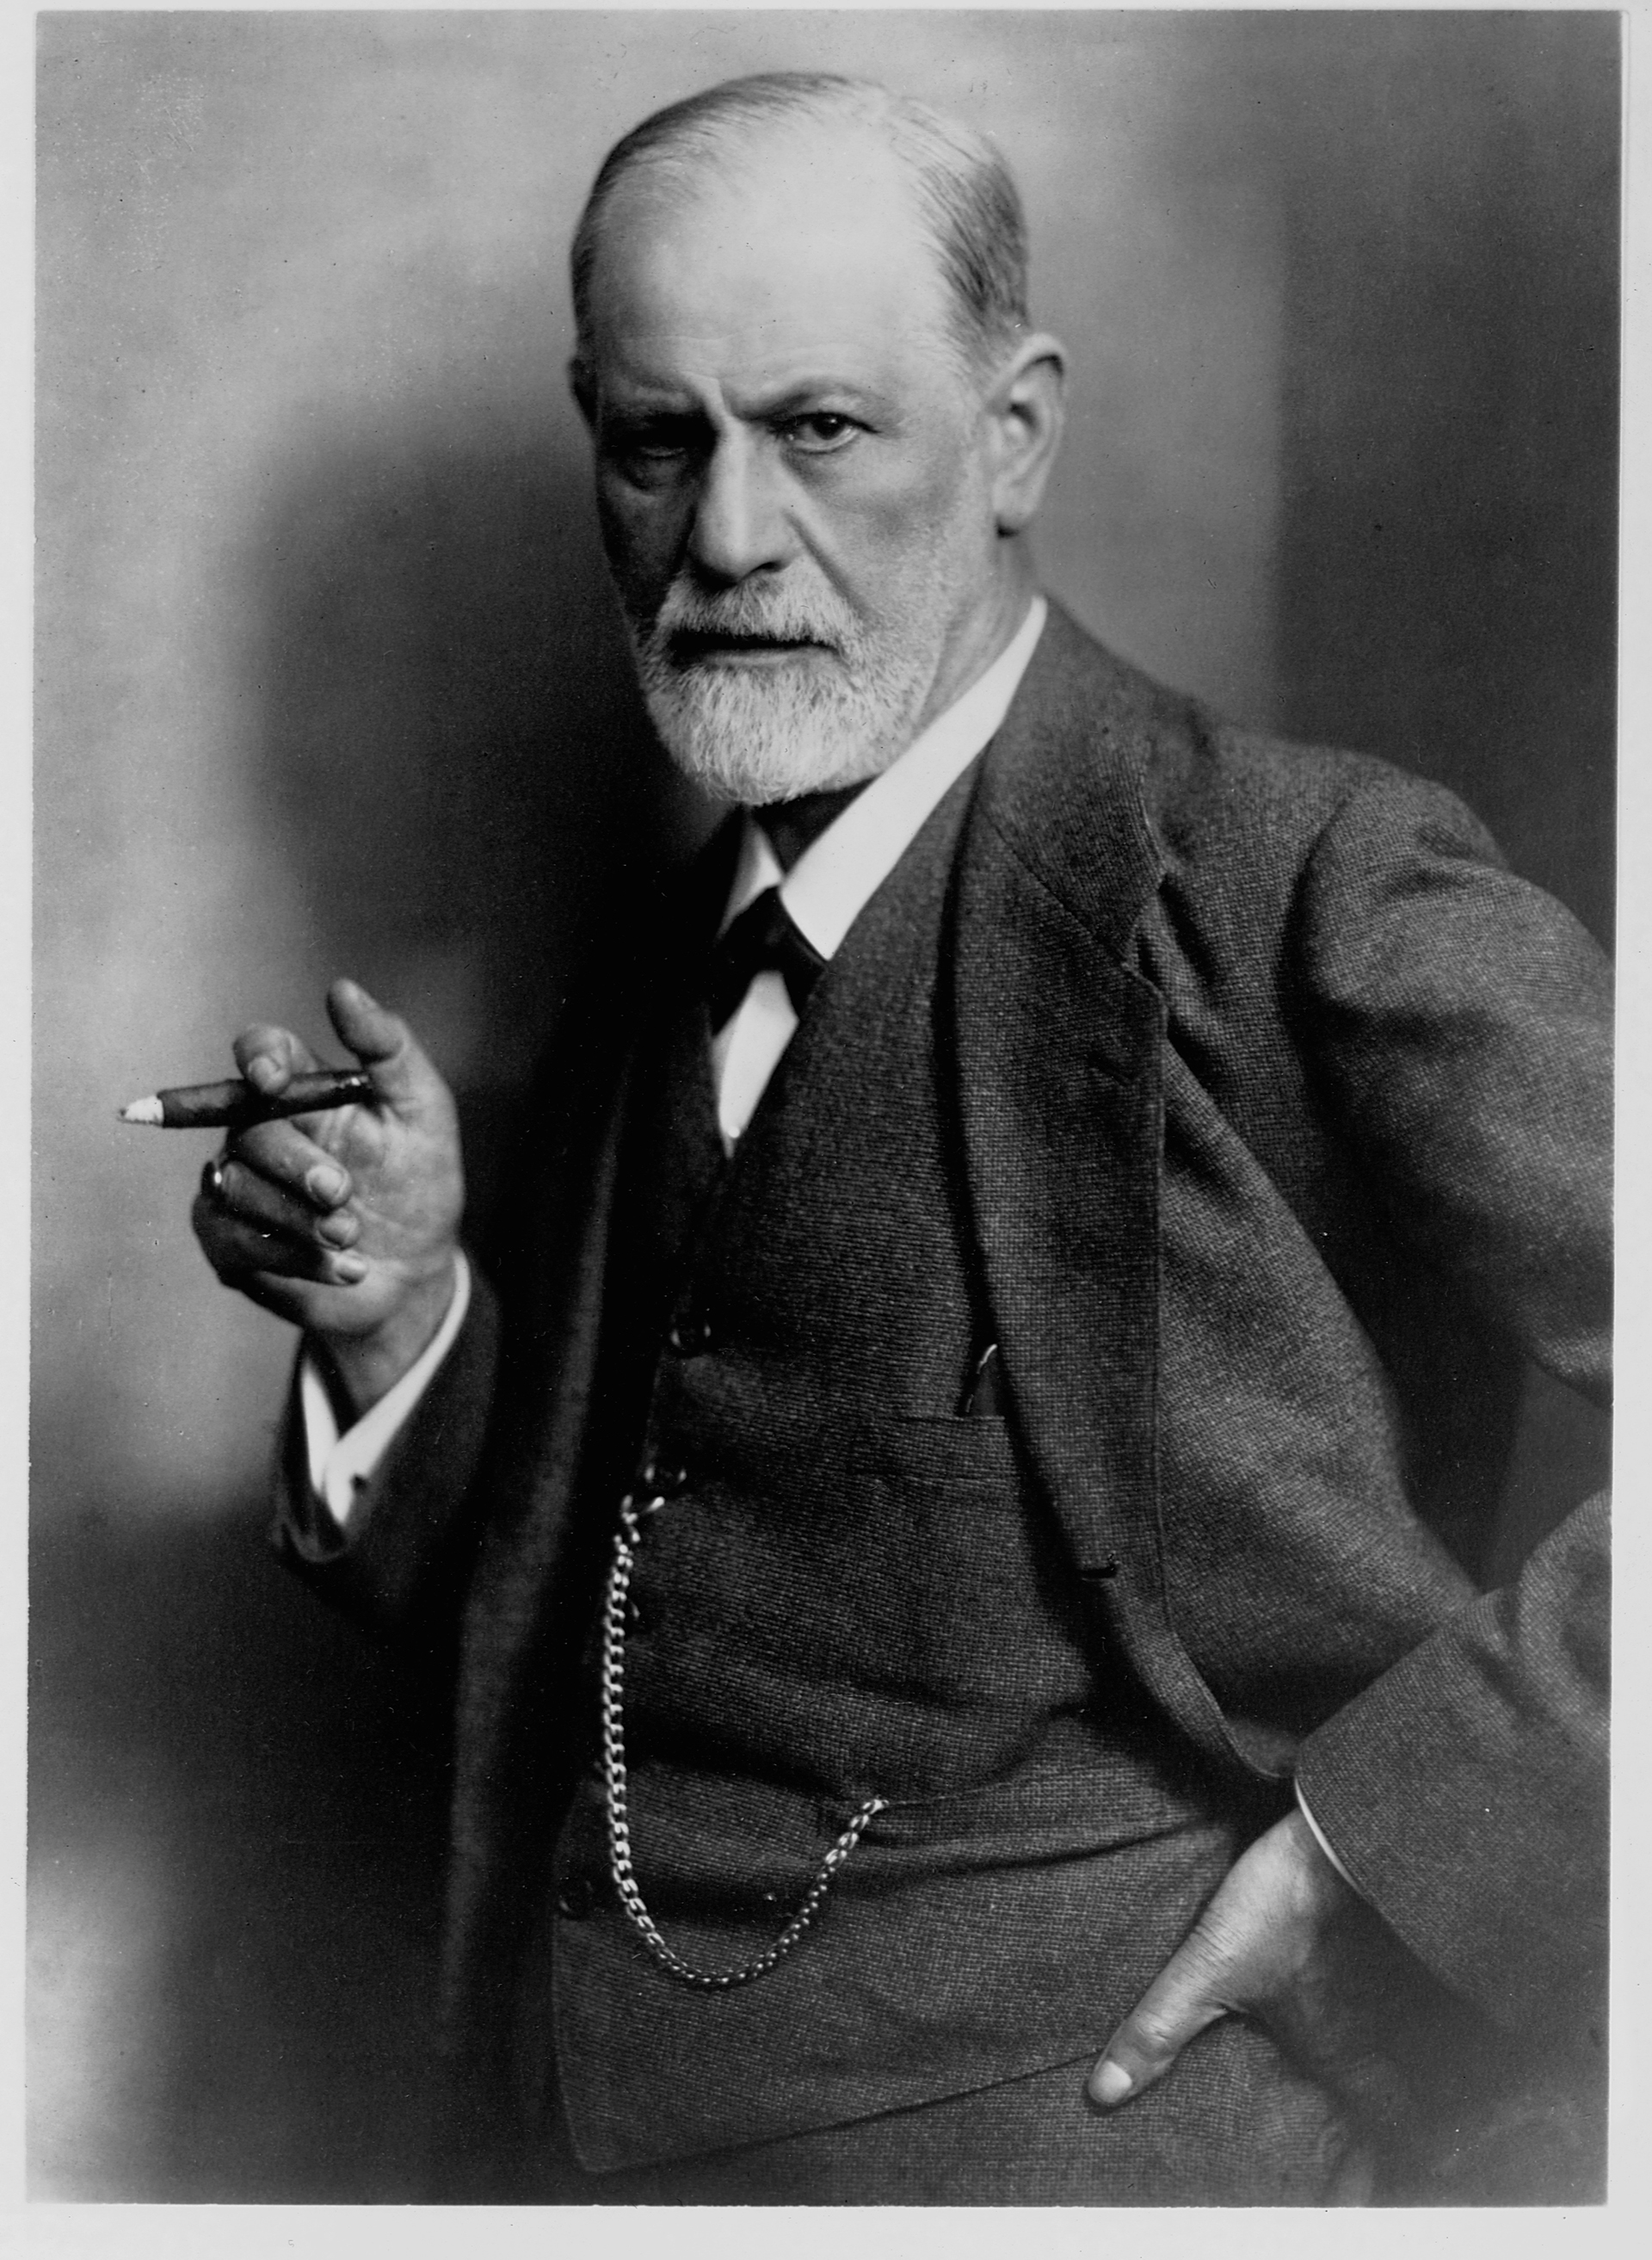 De tanto fumar puros, unos veinte por día, en 1923 Freud tuvo la terrible noticia: cáncer de paladar y mandíbula. El 20 de abril de ese año le hicieron la primera cirugía para extirparlo (Library of Congress/Corbis/VCG via Getty Images)